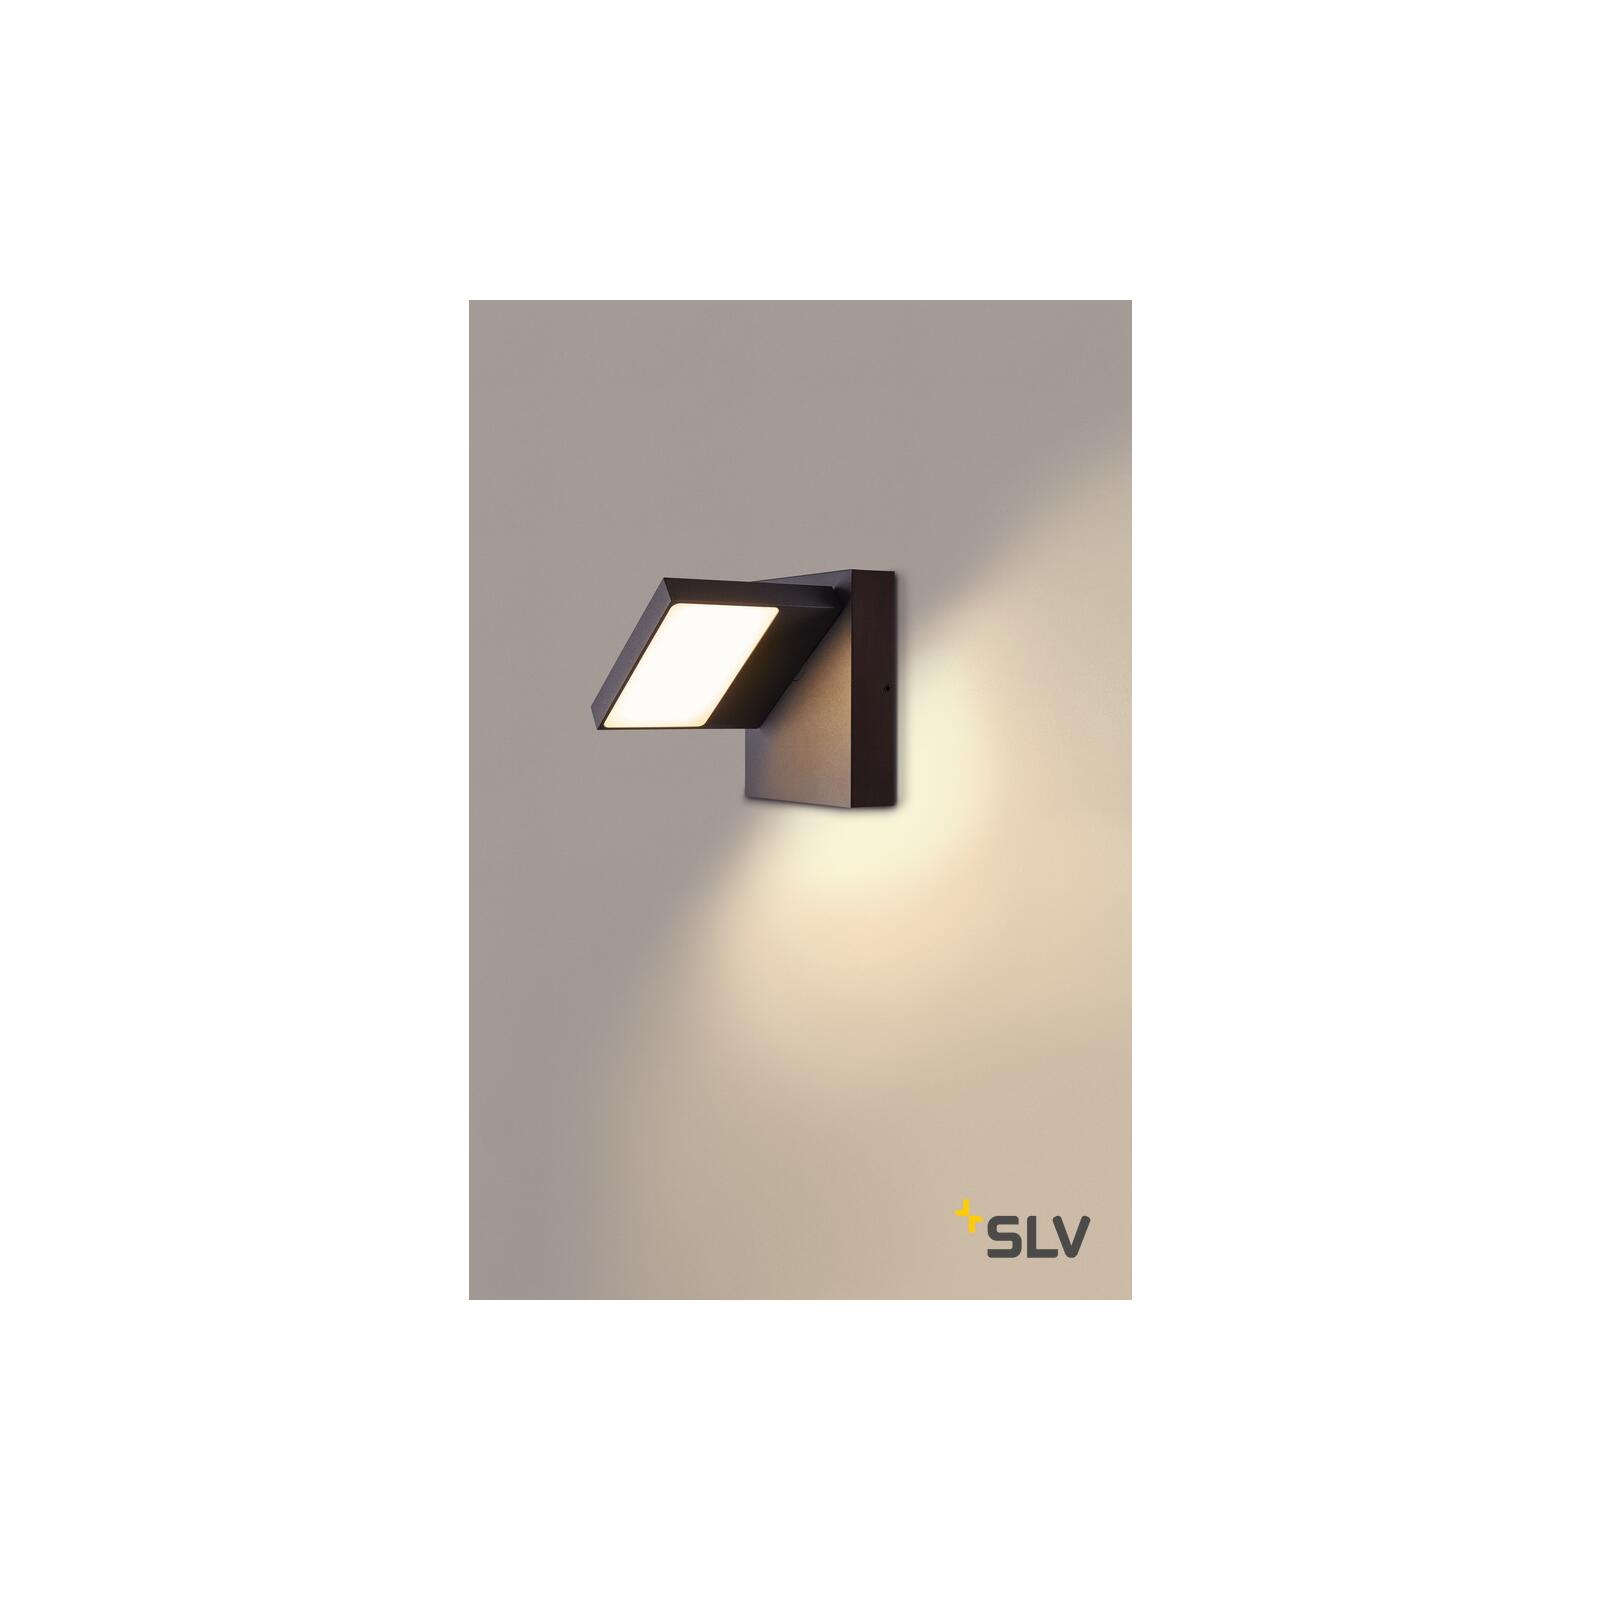 & Lampen modern - Leuchtenkopf Abridor drehbarer Outdoor LED IP55 Leuchten Onlineshop anthrazit Wandleuchte